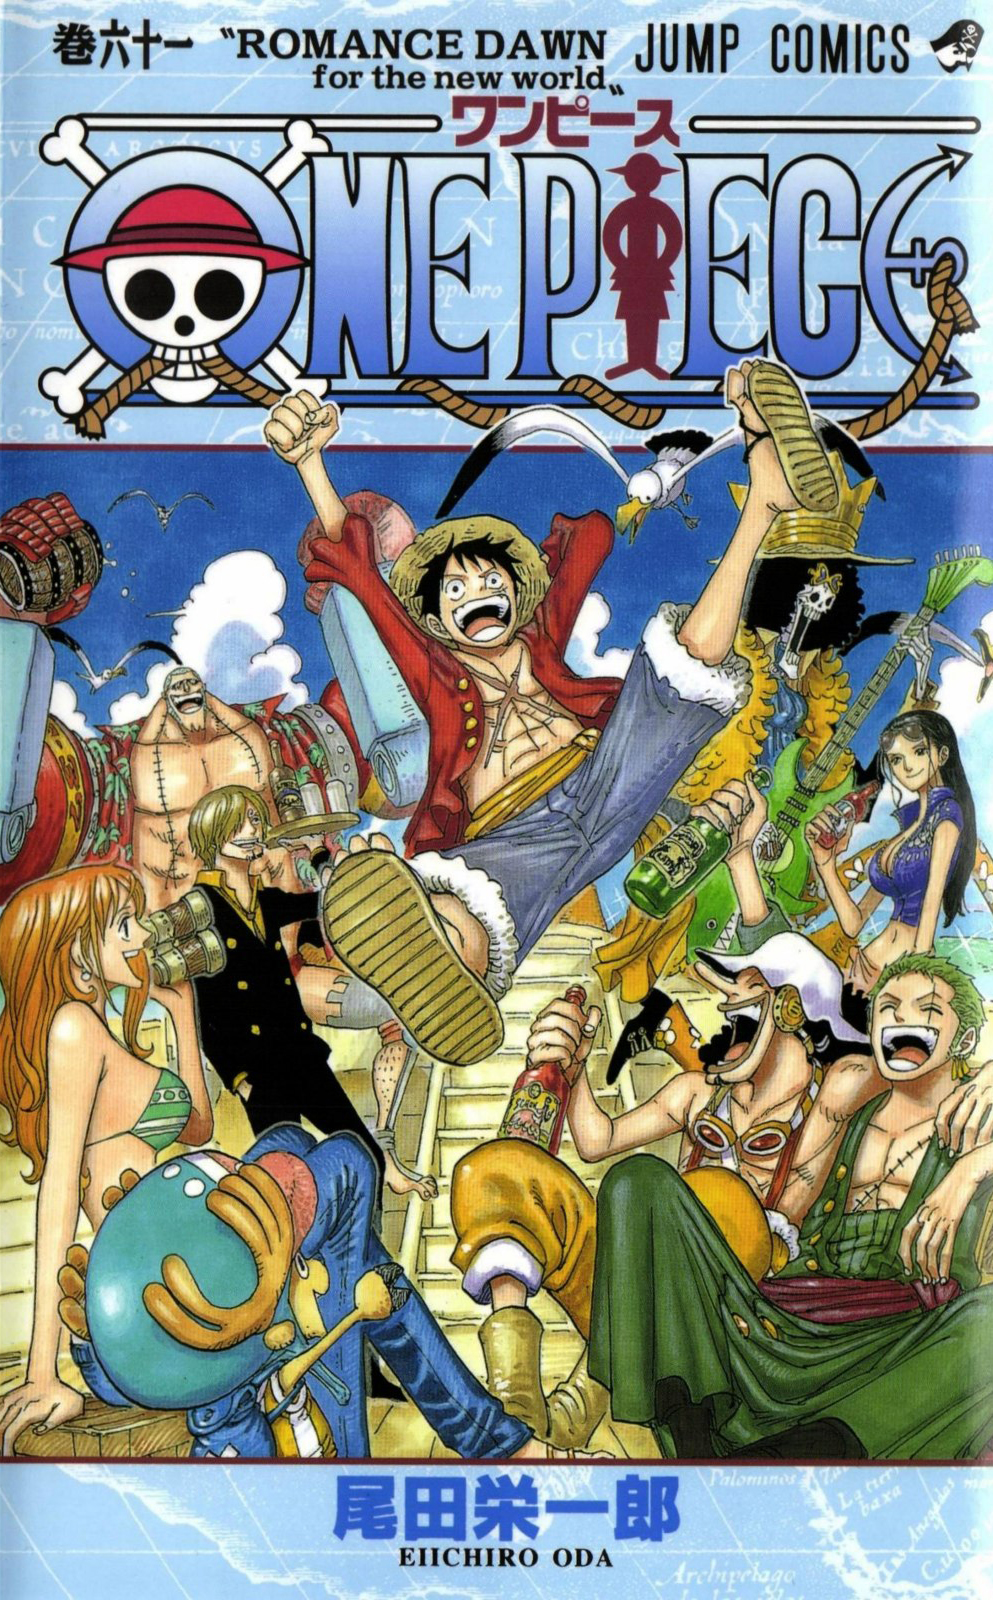 Tom 61 One Piece Wiki Fandom